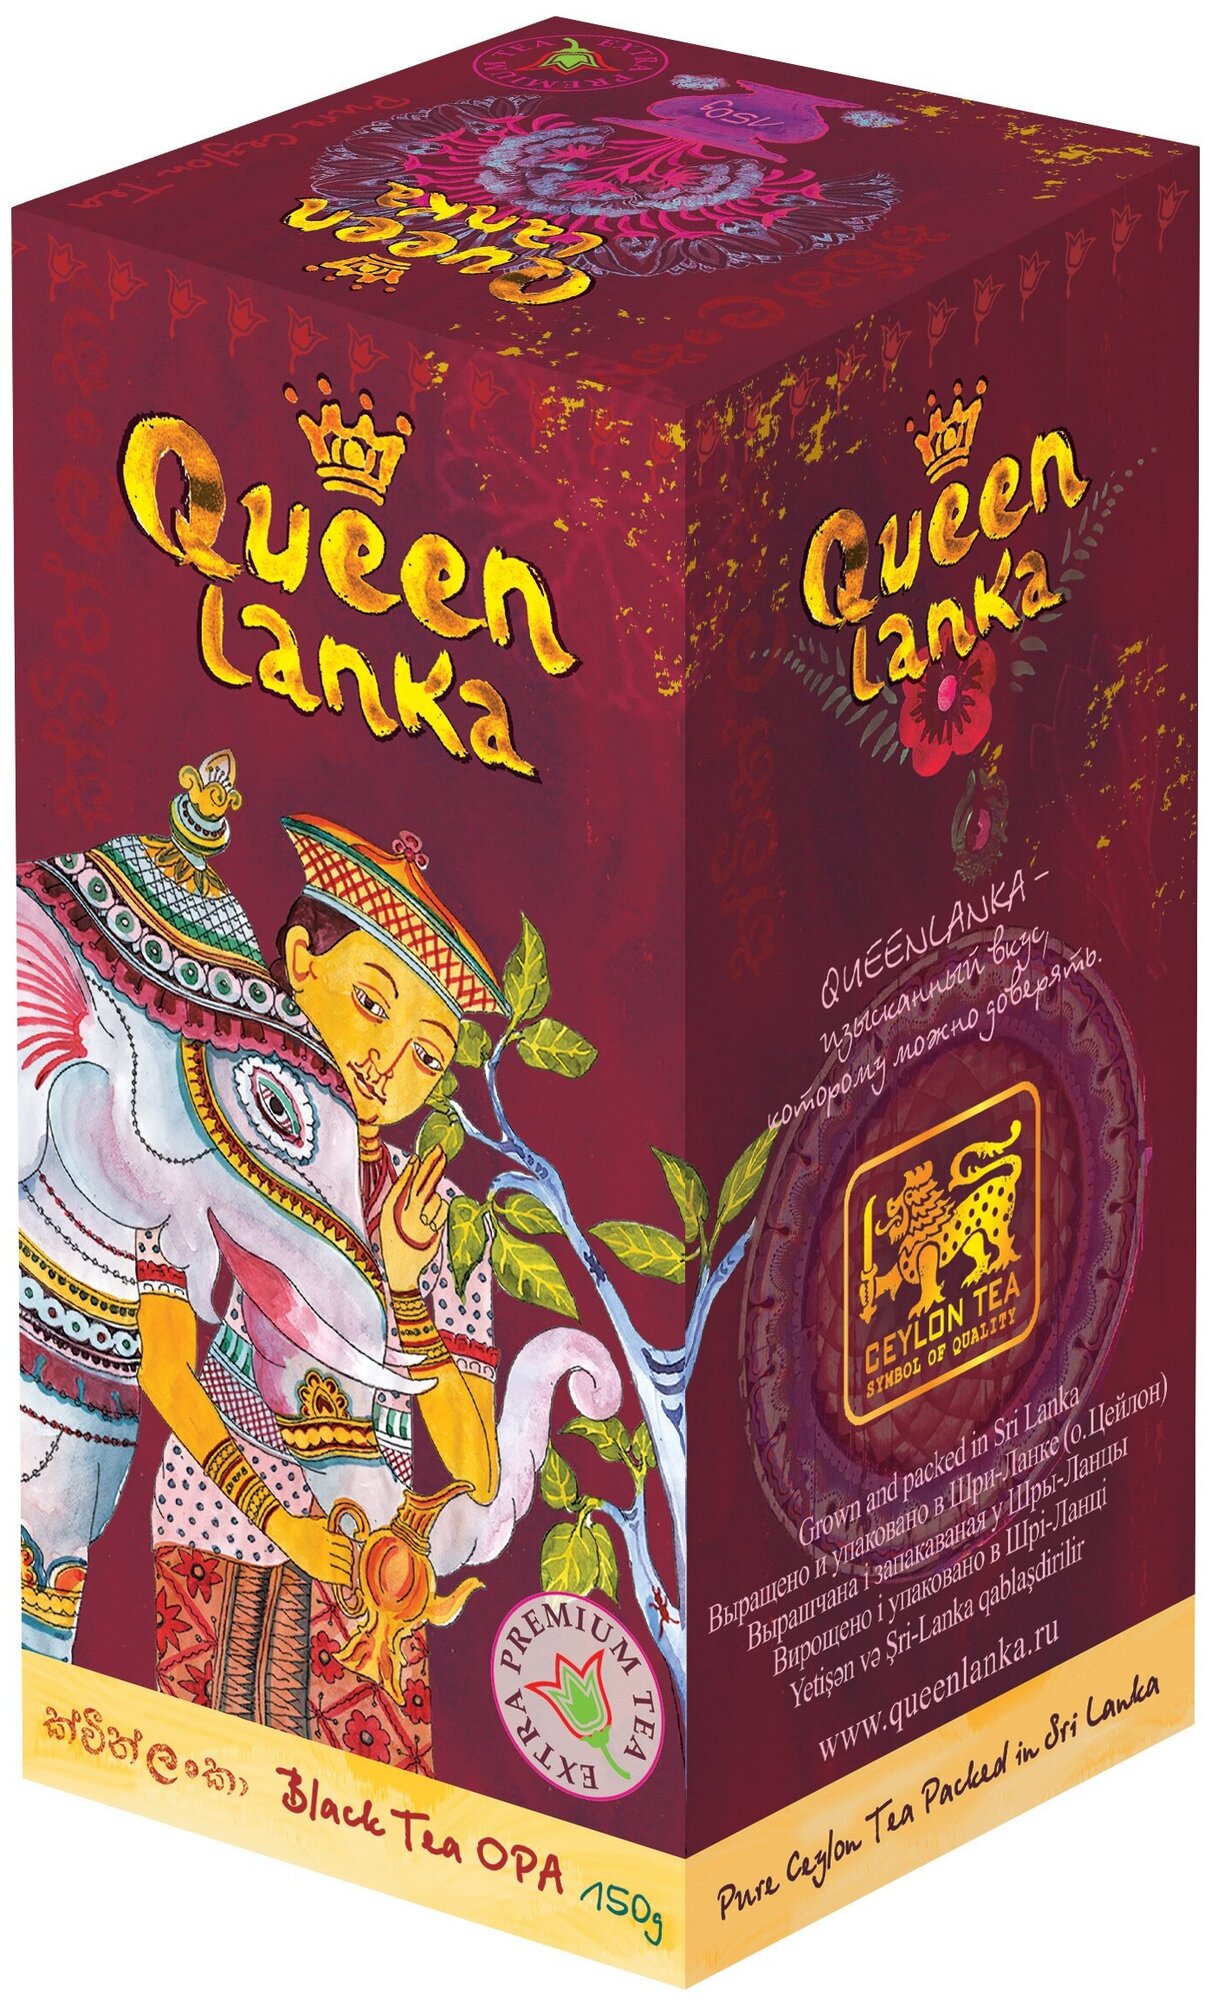 Чай QUEEN LANKA "OPA", цейлонский черный особо крупнолистовой чай стандарта OPA (Orange Pekoe A) с высоким содержанием ароматических масел, 150 гр